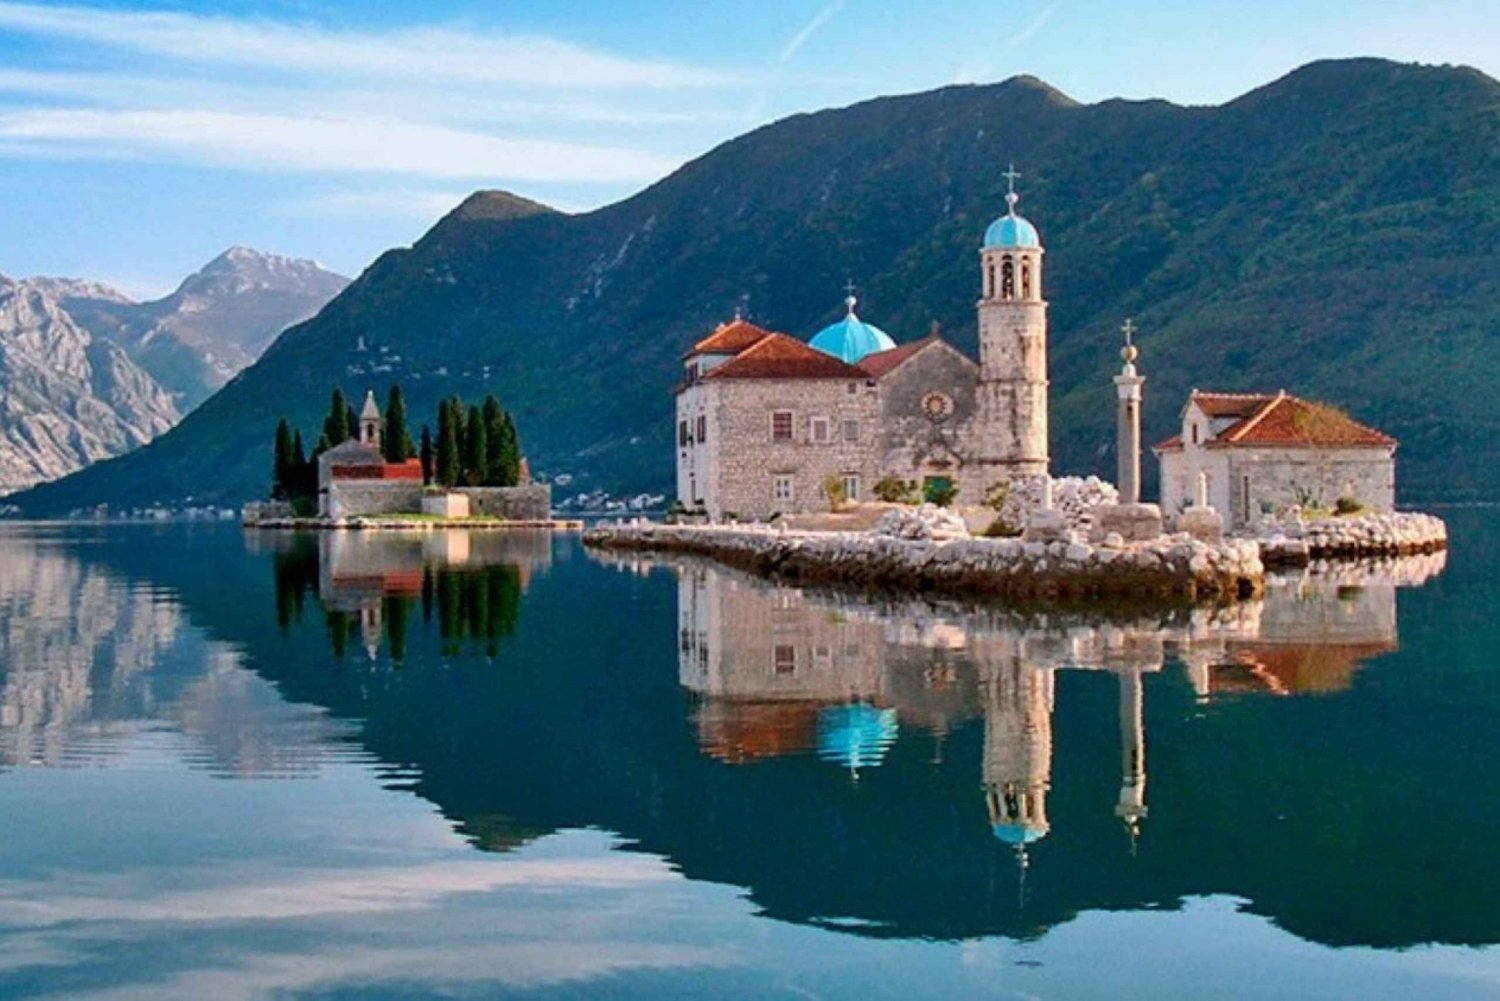 Från Cavtat: Kotorbukten: Dagstur till Montenegro och båtkryssning i Kotorbukten